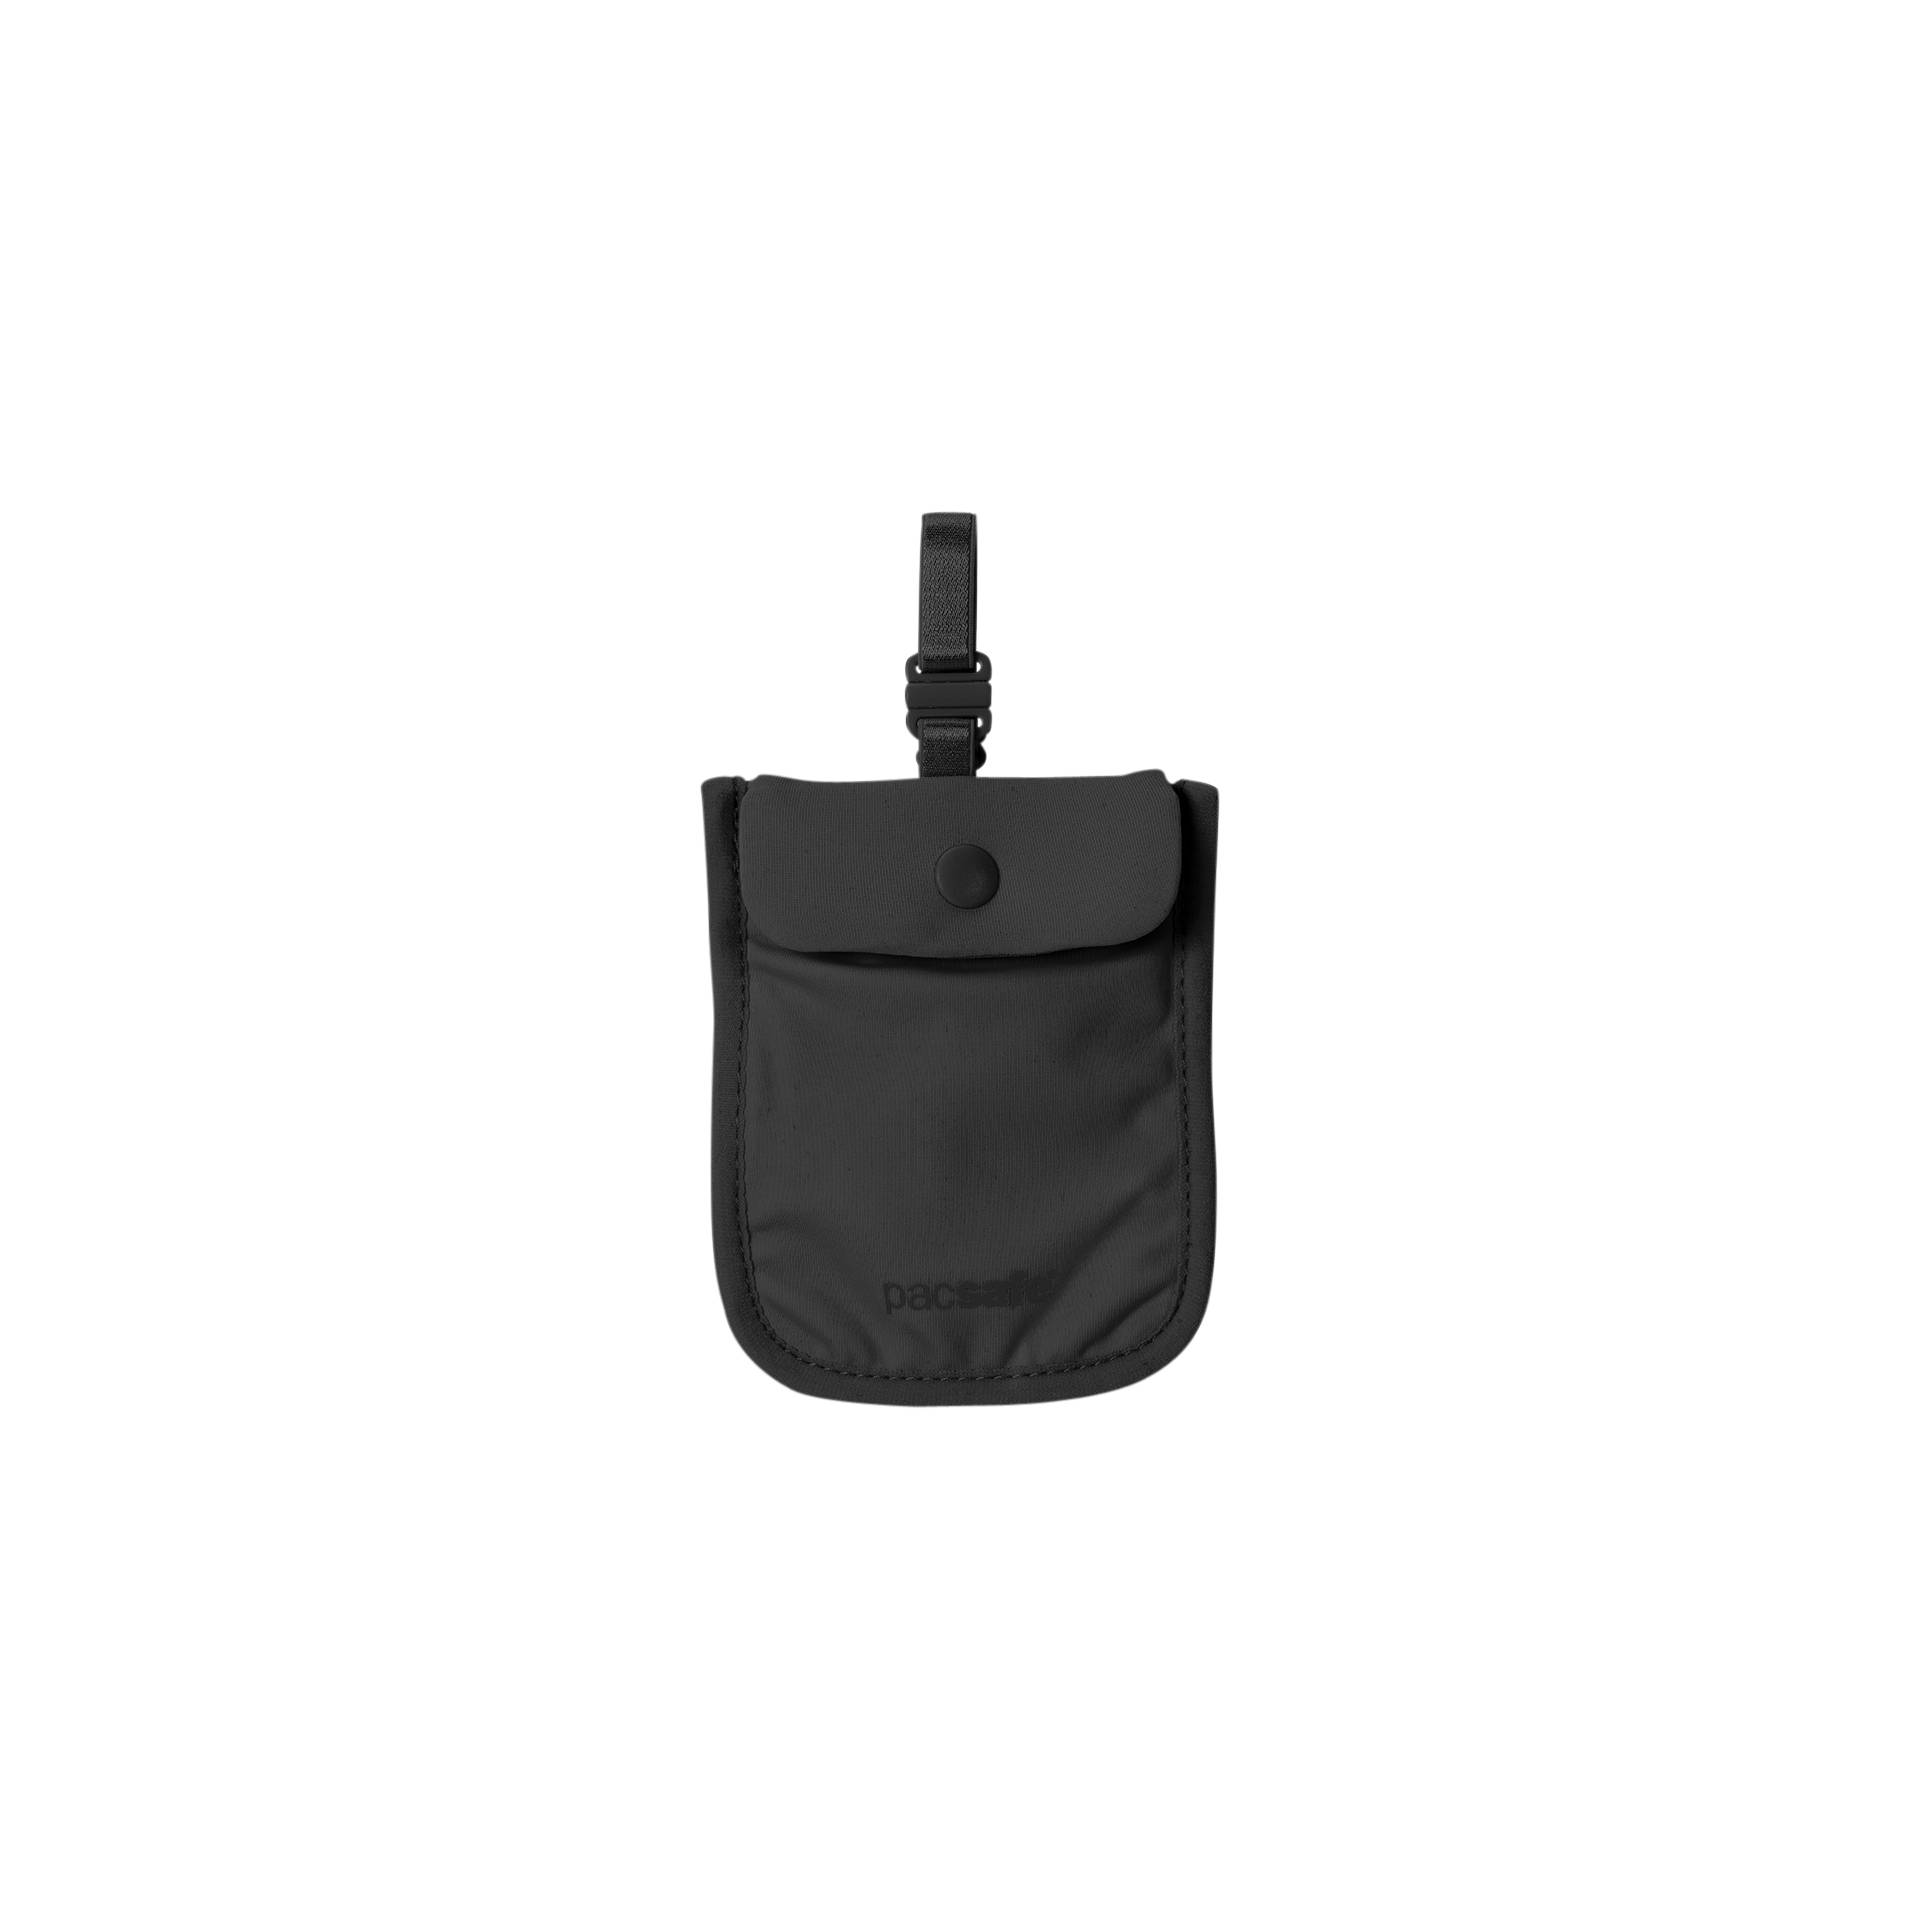 Pacsafe Coversafe S25 Bra Bag black